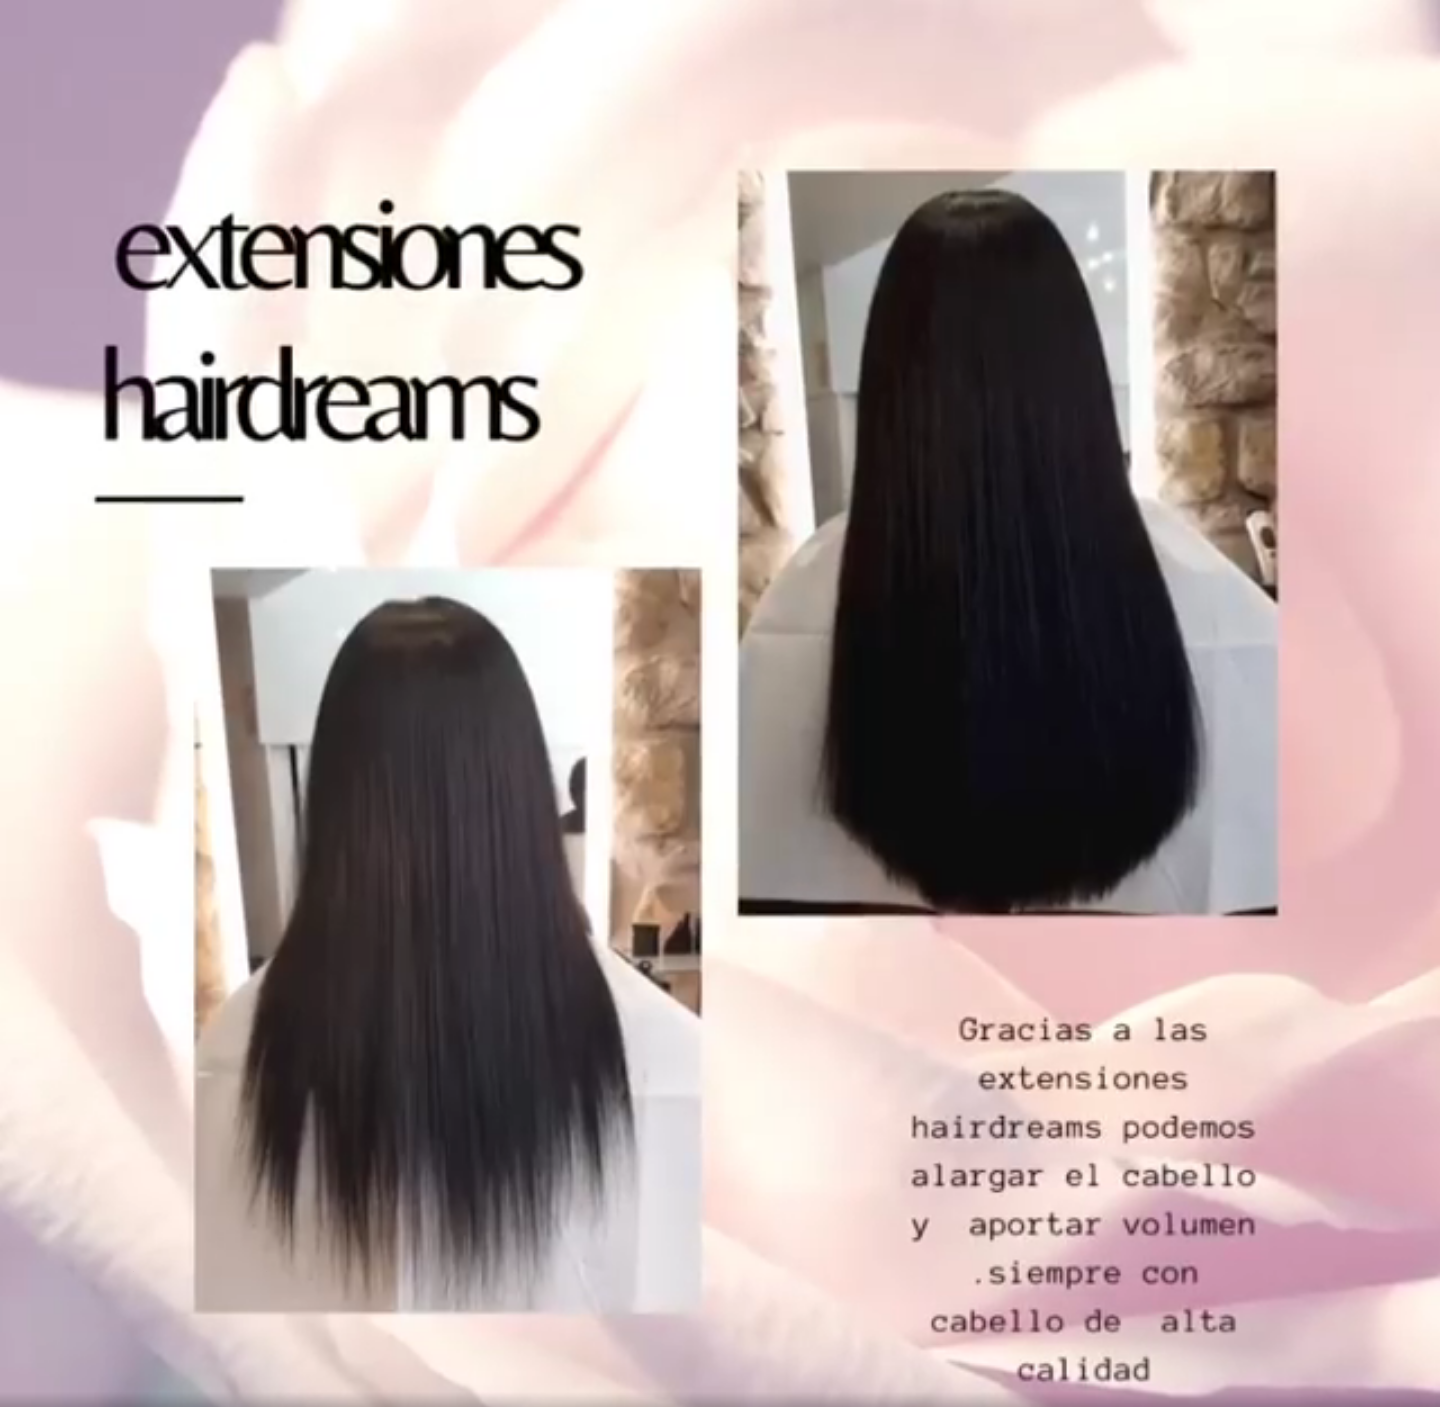 Extensiones hairdreams